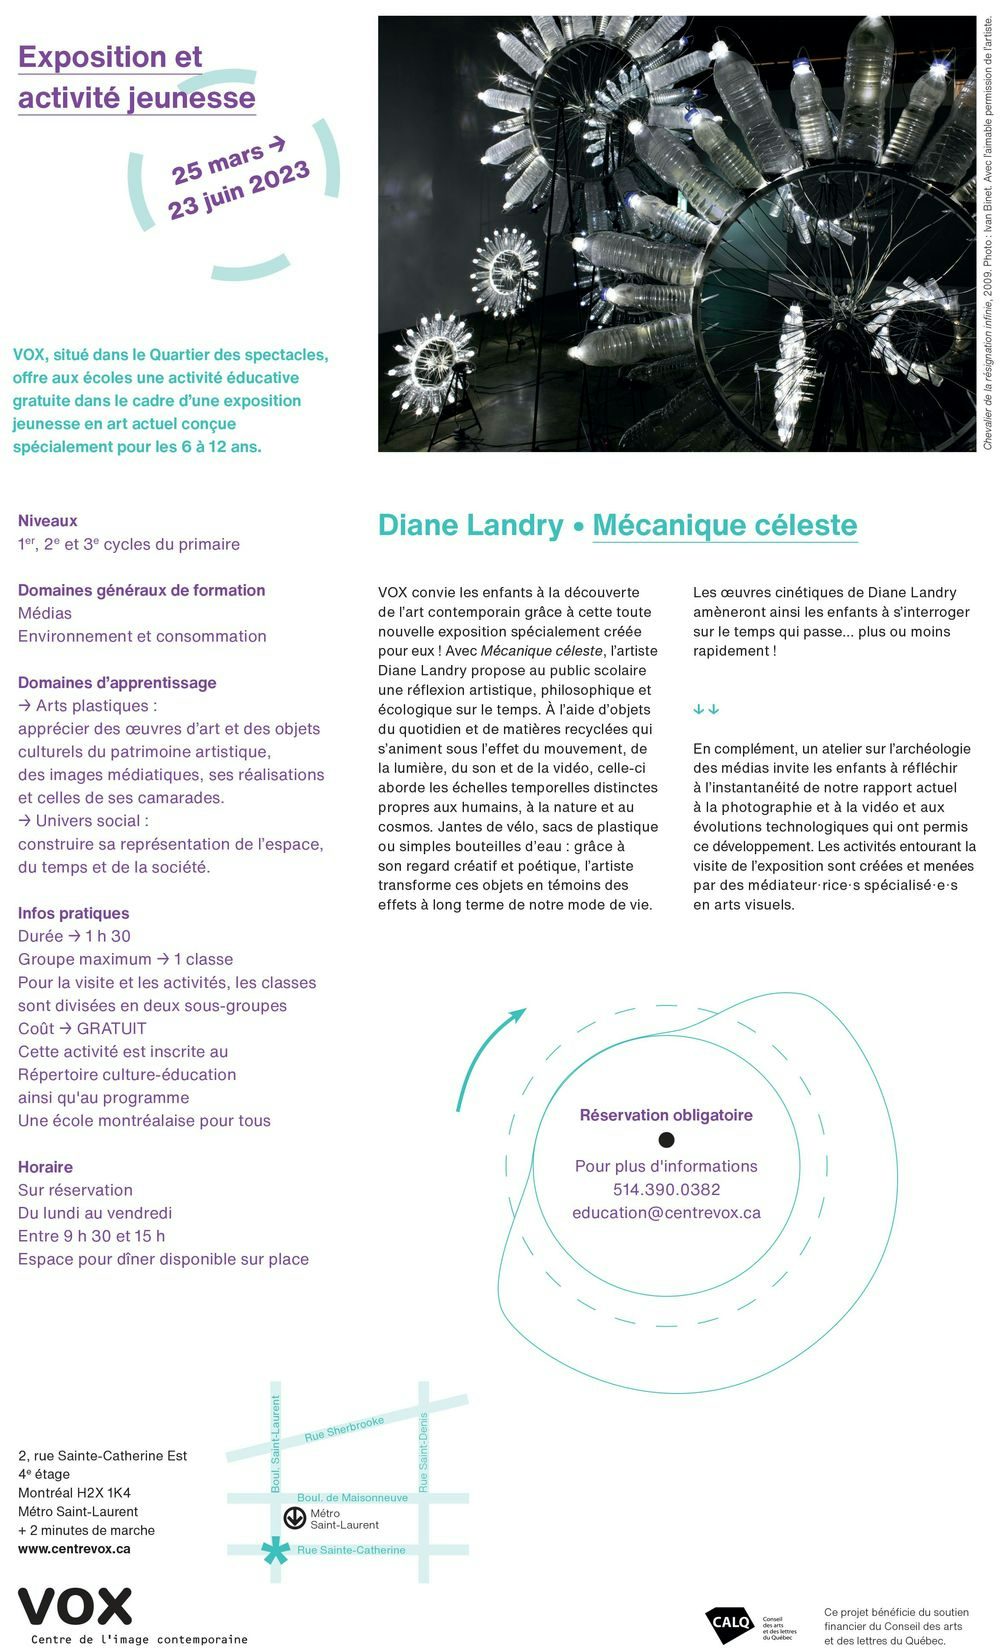 Document de sollicitation Diane Landry. Mécanique céleste. Source : VOX, 2023.